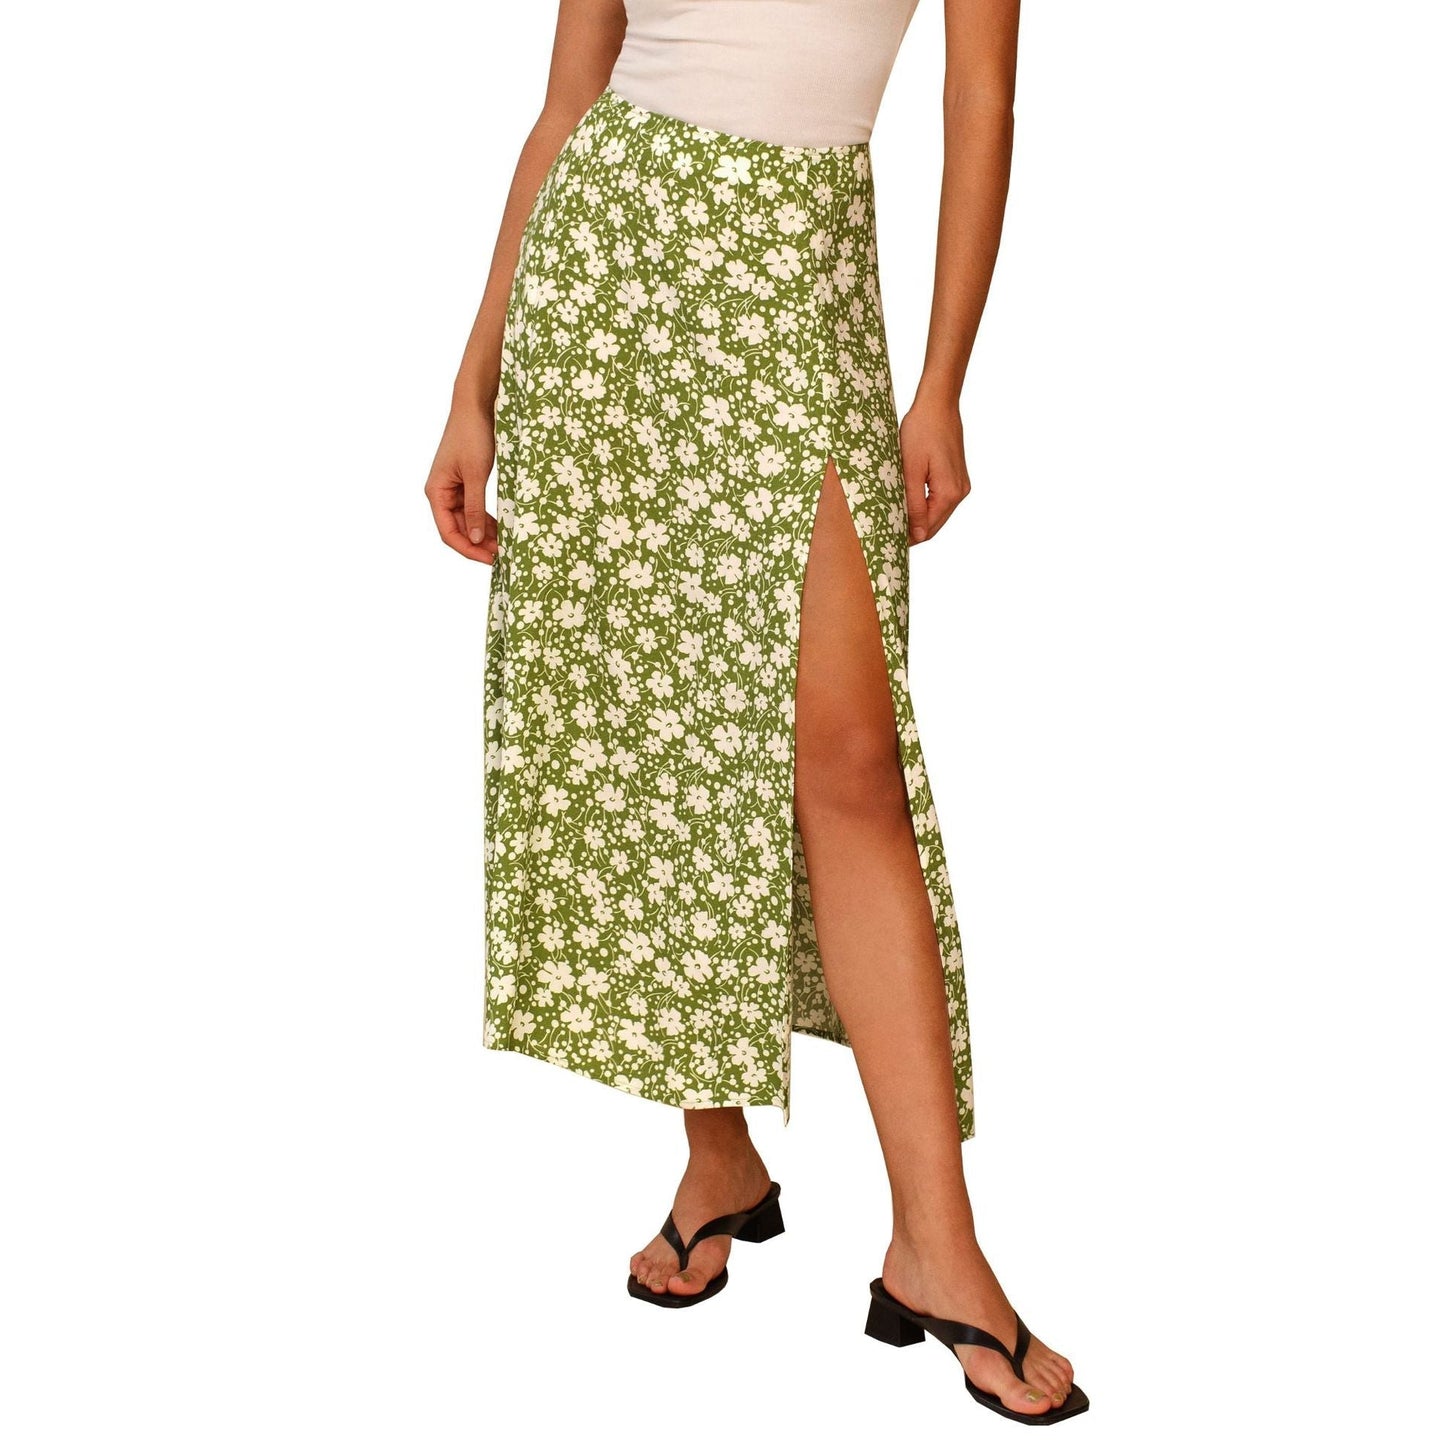 Beach Maxi Skirt with High Waist Skirt